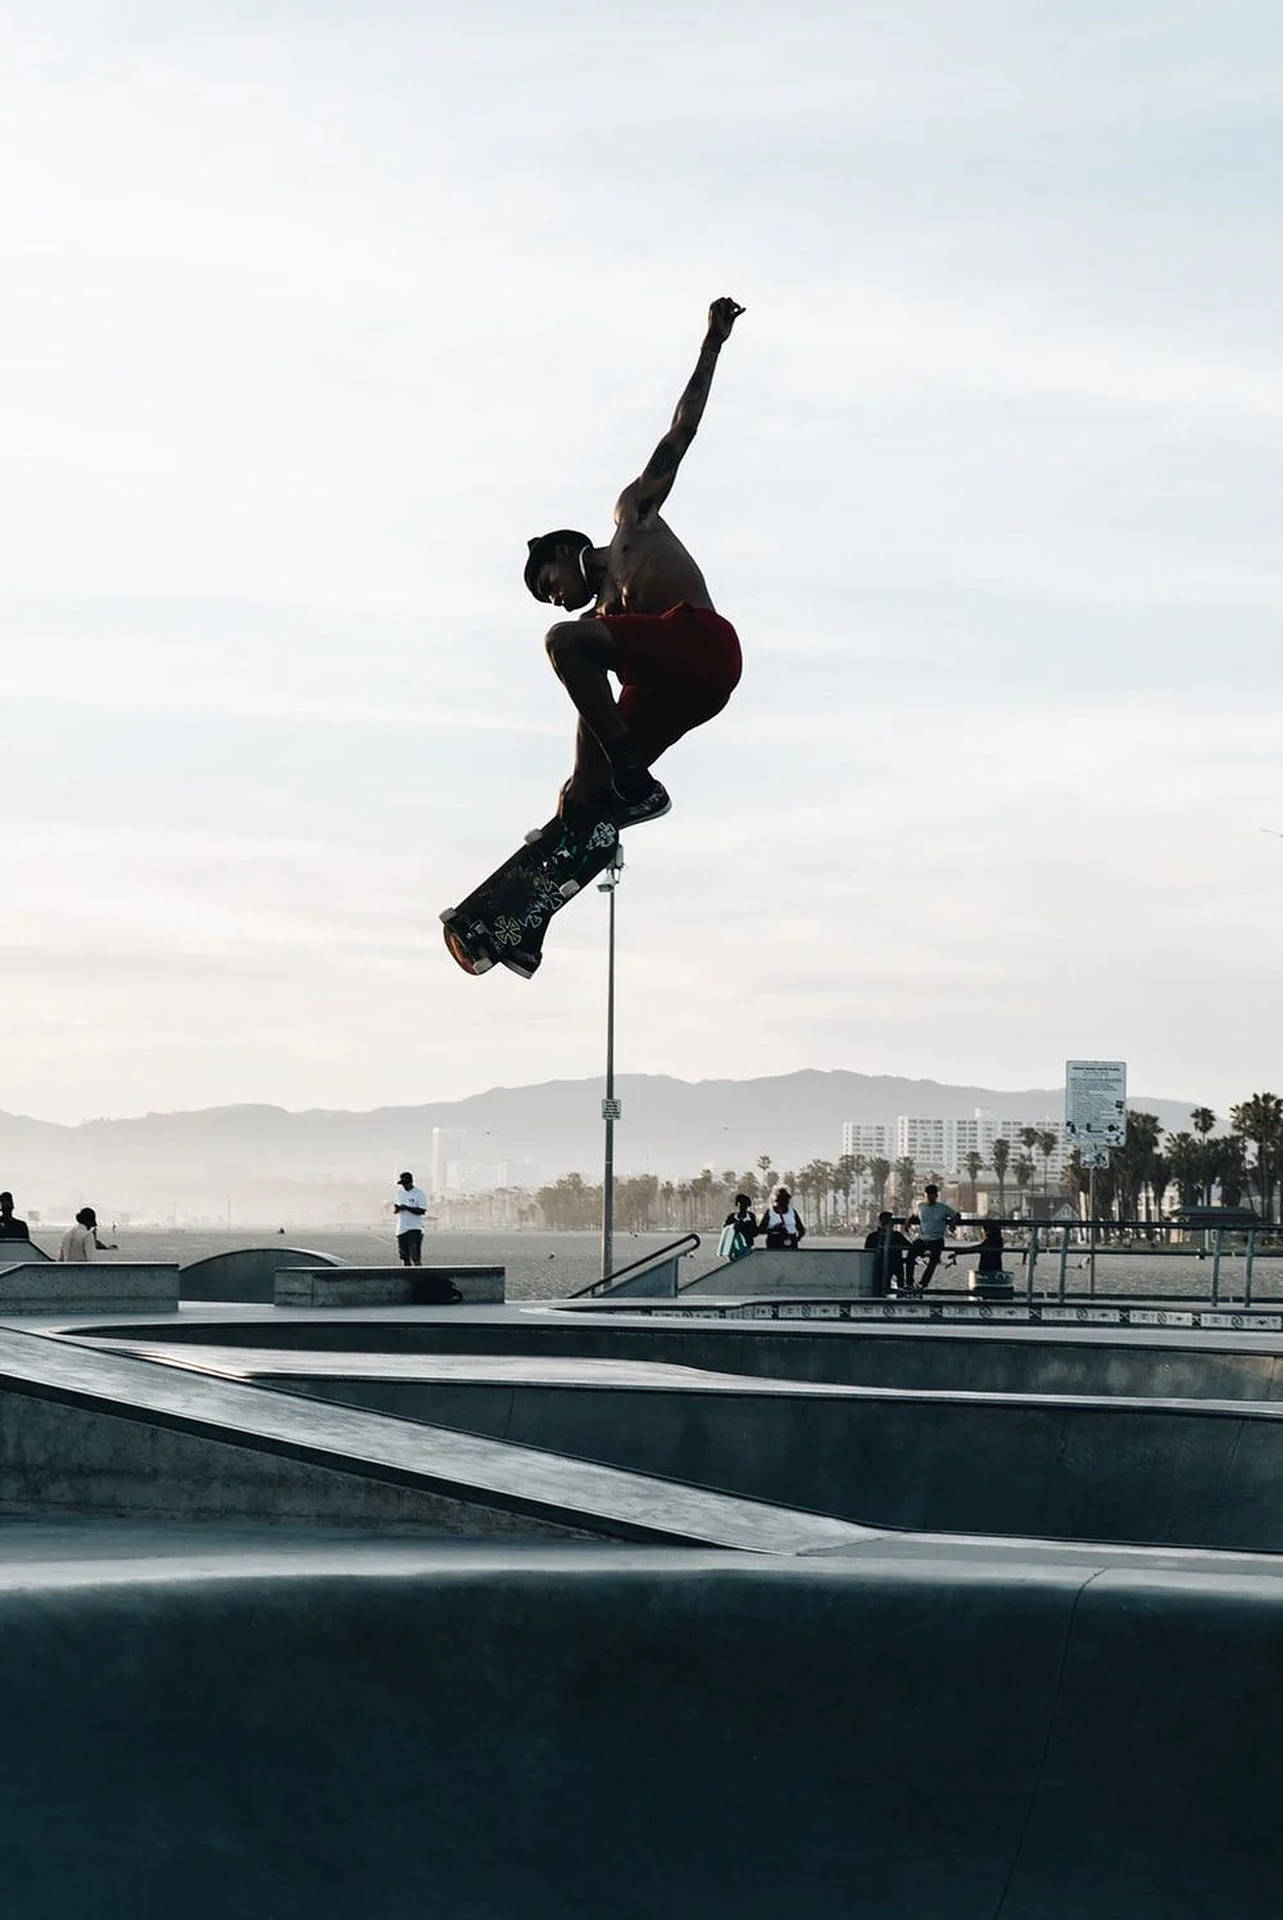 Aesthetic Skater Boy Midair Wallpaper